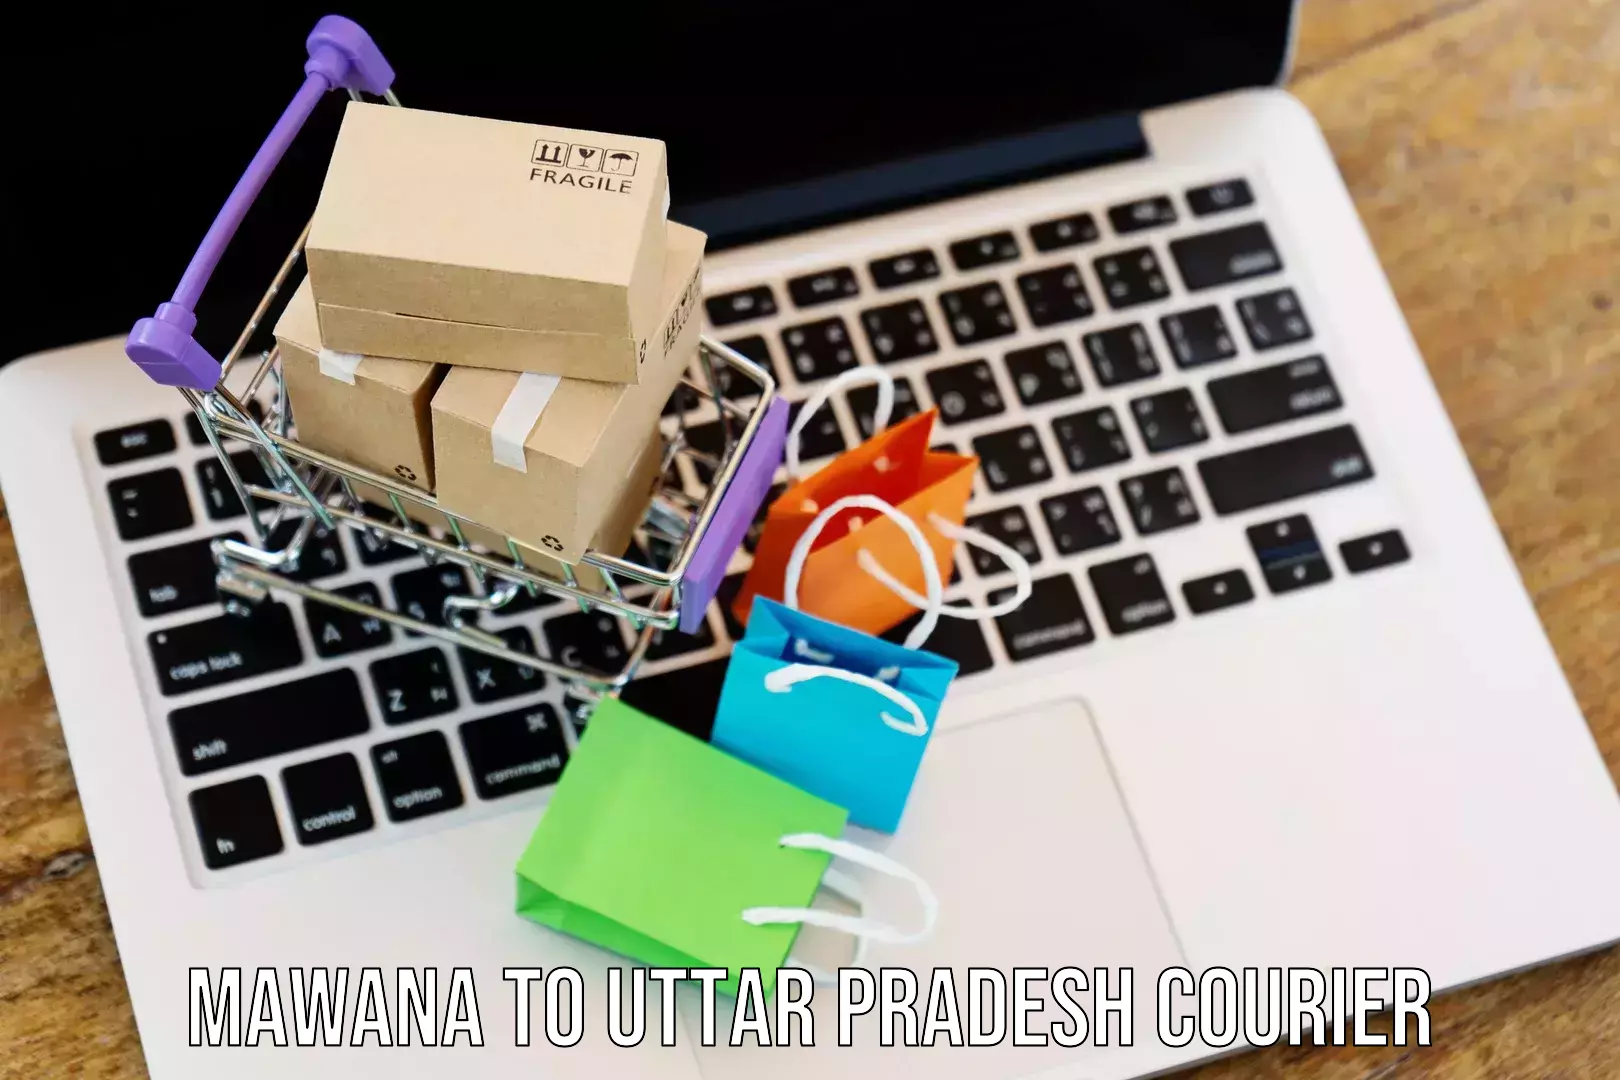 Urgent courier needs Mawana to Uttar Pradesh